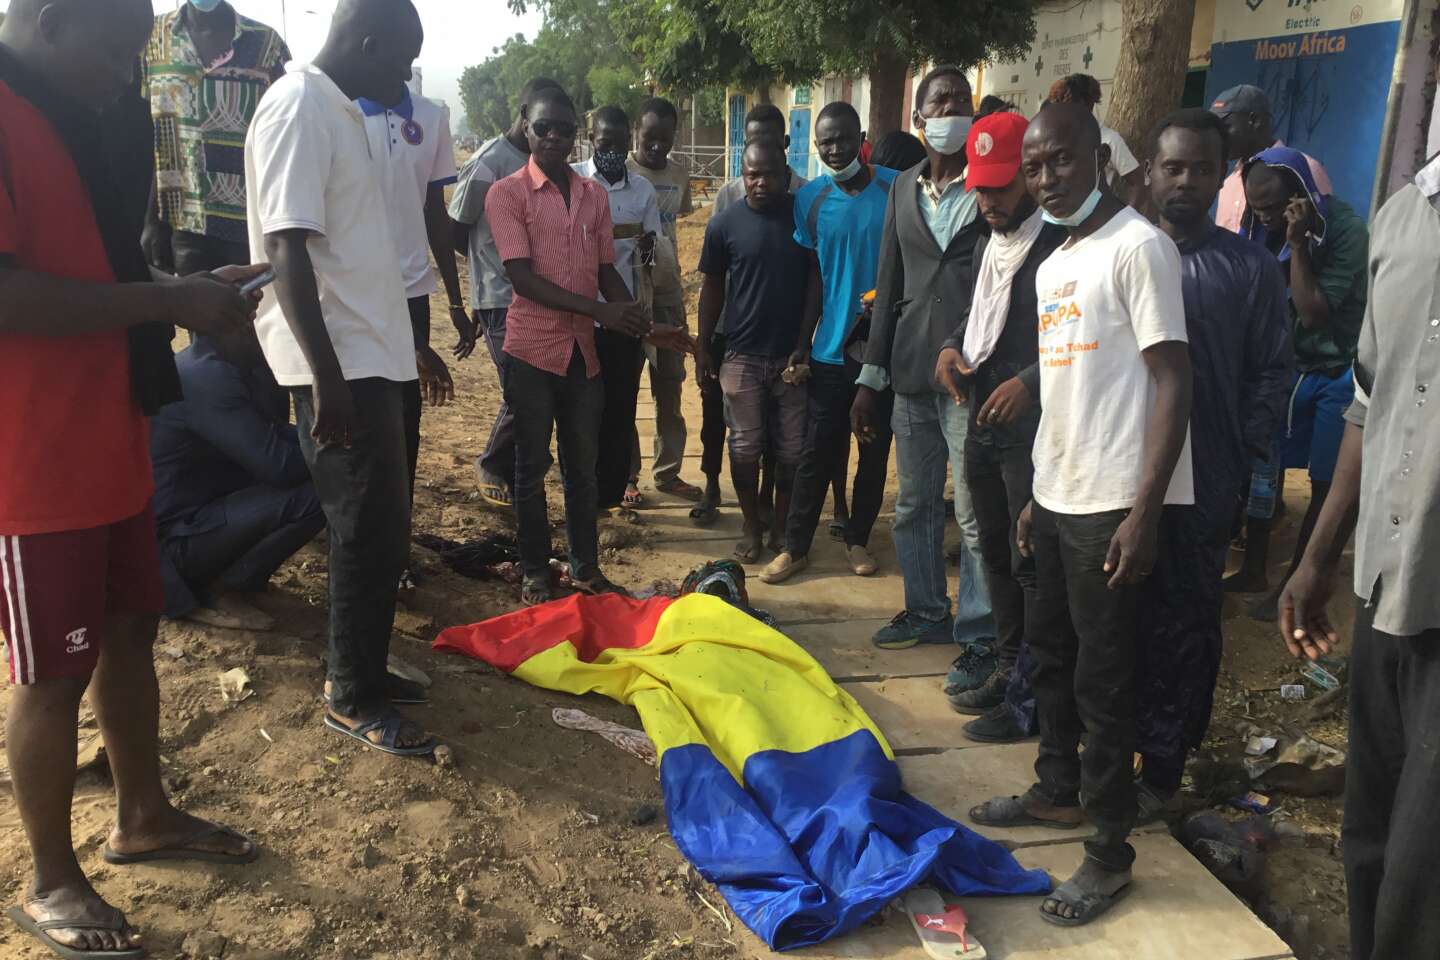 Au Tchad, le président Mahamat Déby dénonce une « insurrection » soutenue par des « puissances étrangères »